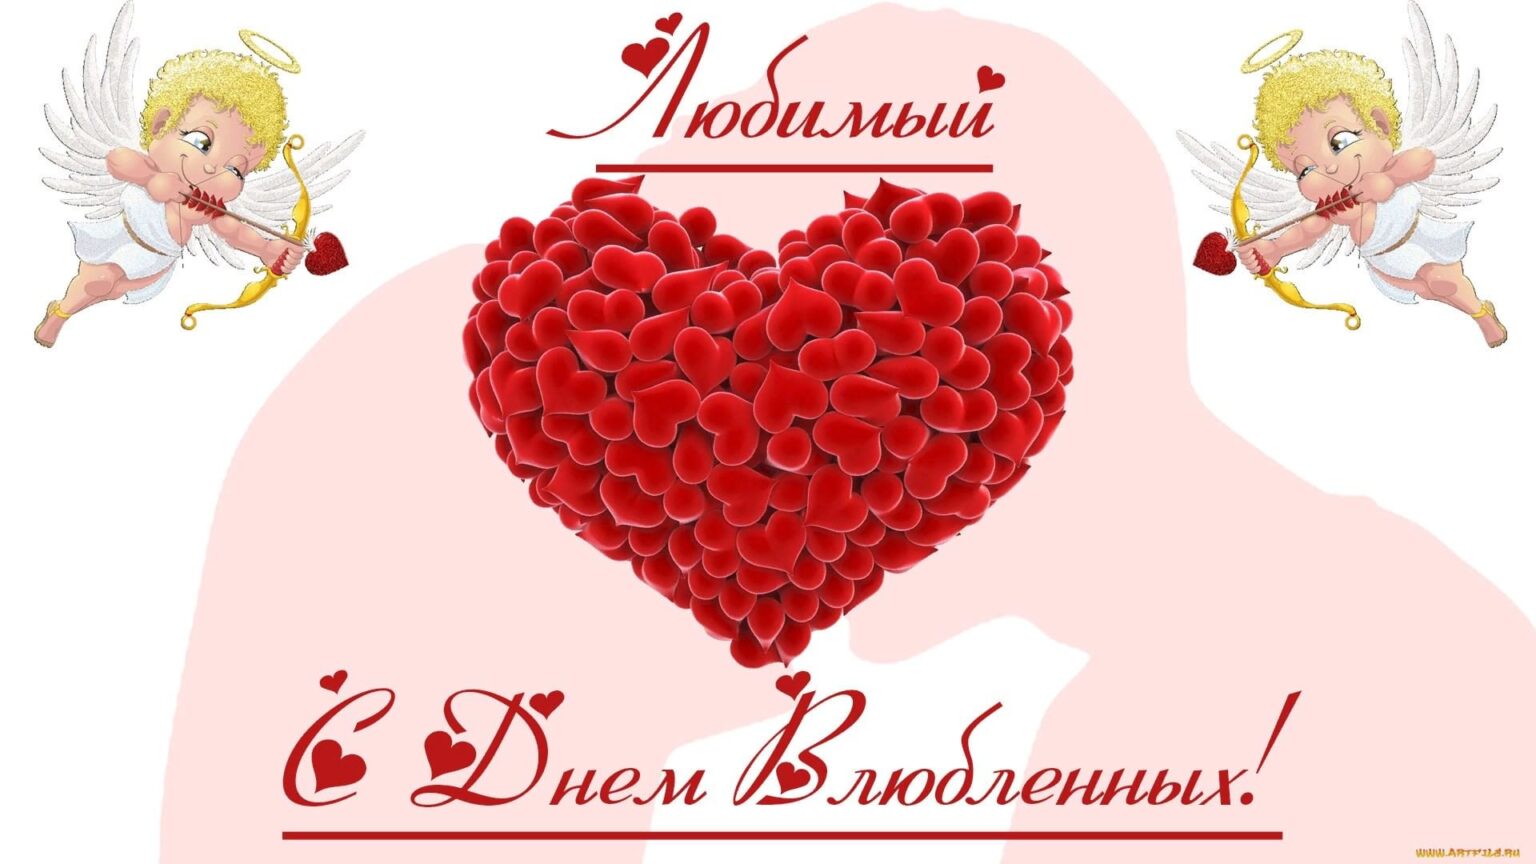 Два ангелочка с луками и стрелами по бокам большого сердца из роз, с надписью Любимый с Днем Влюбленных на праздничной открытке в честь Дня святого Валентина.